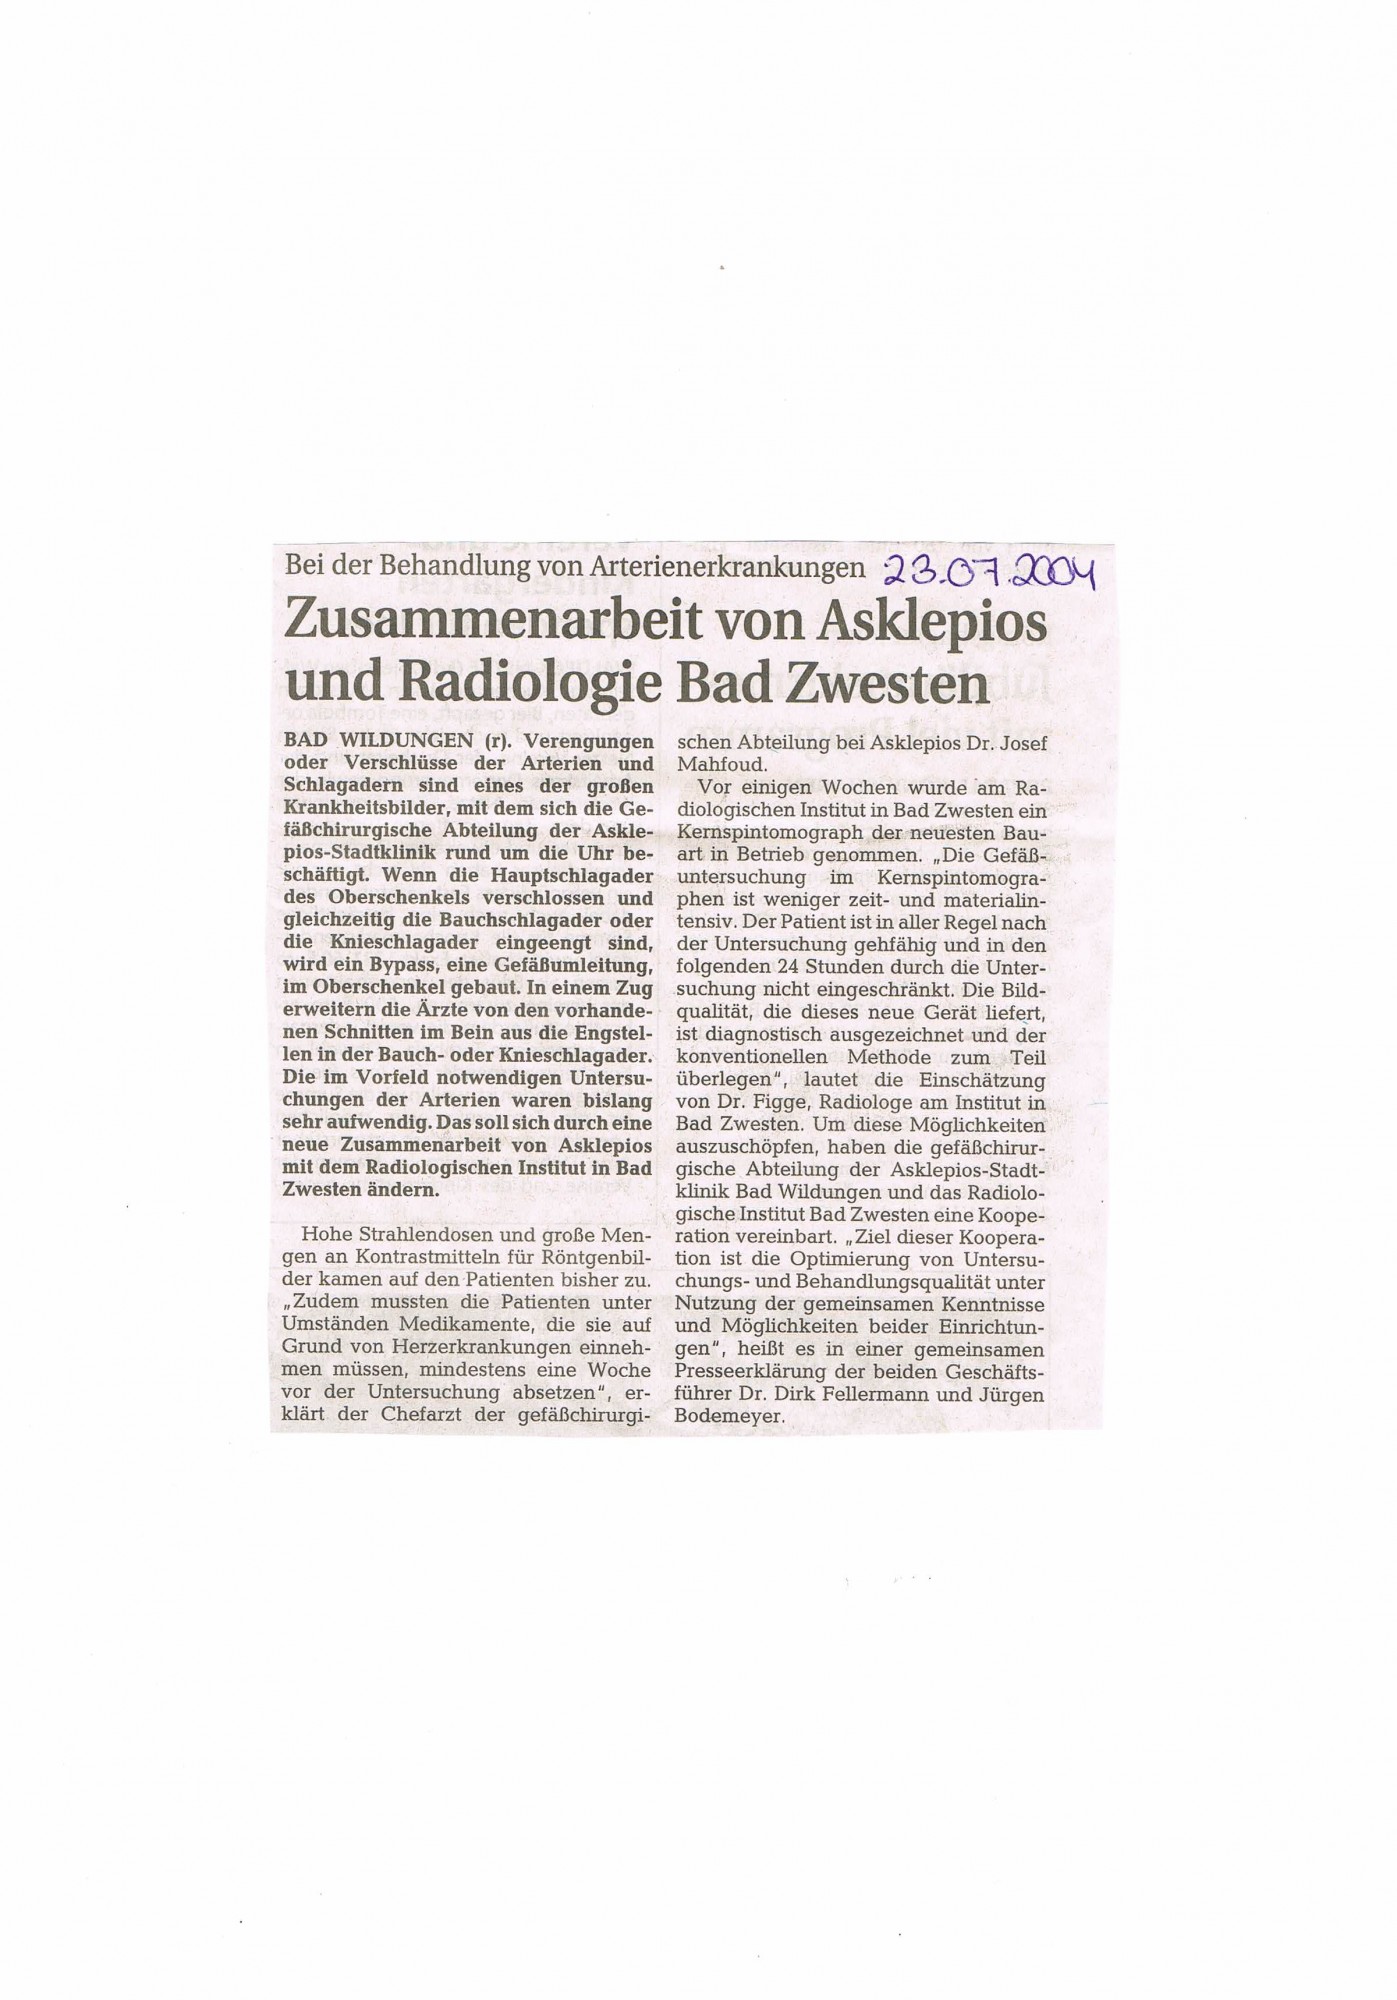 2004-07-23 Zusammenarbeit von Asklepios und Radiologie Bad Zwesten-001